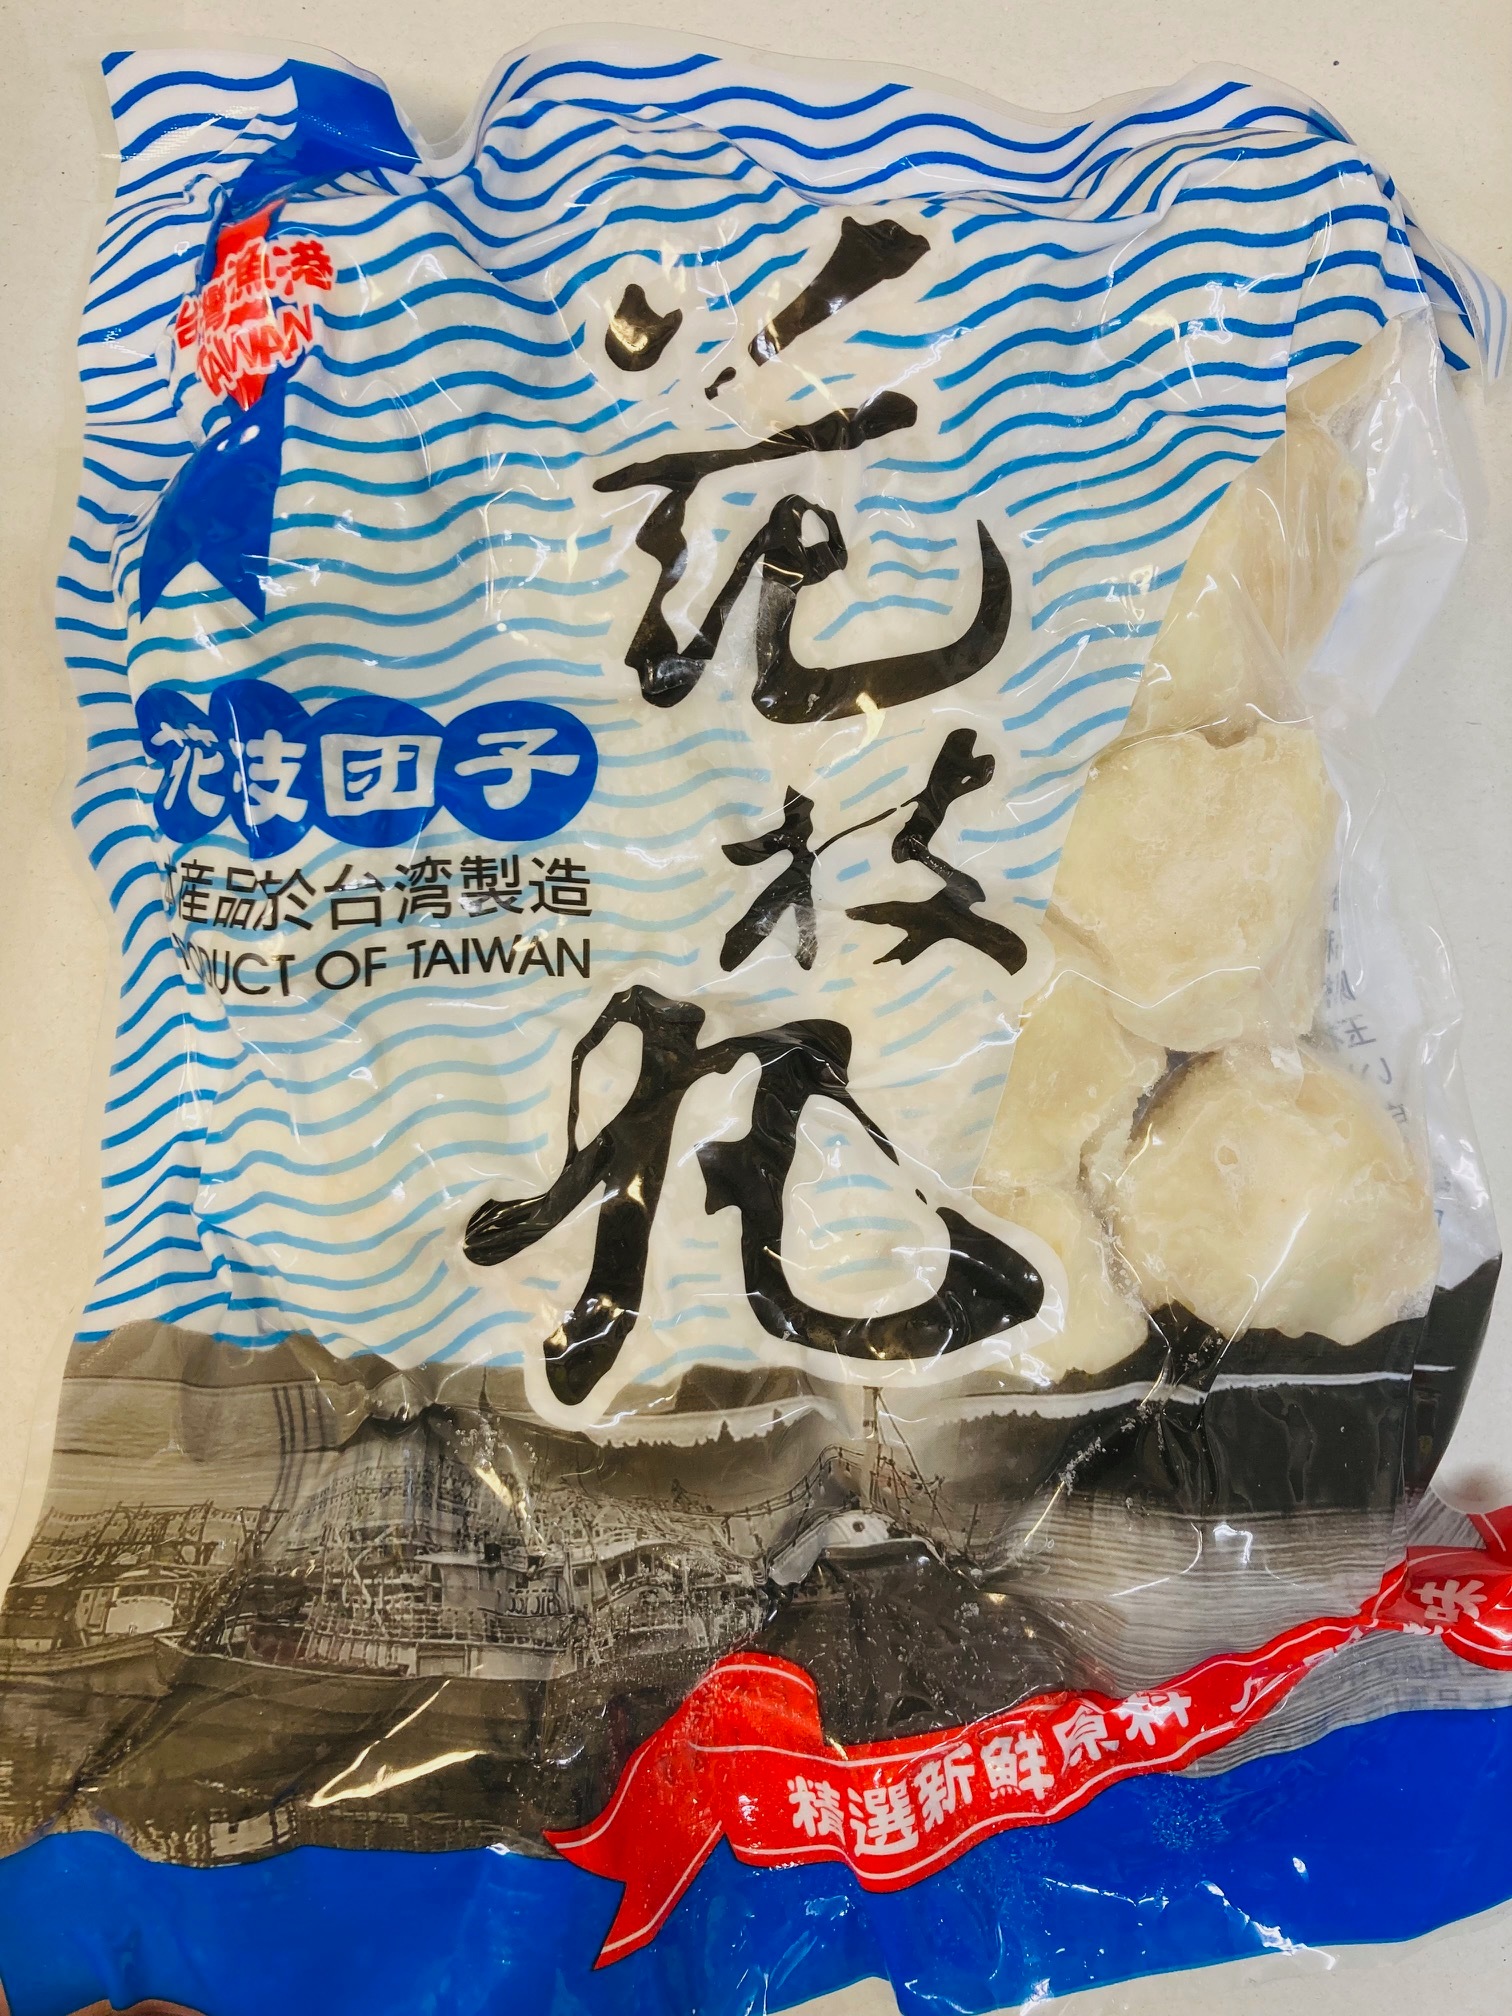 【即発送可能】 花枝団子 台湾産 花枝丸 450g 魚肉練り製品 いかだんご 冷凍食品